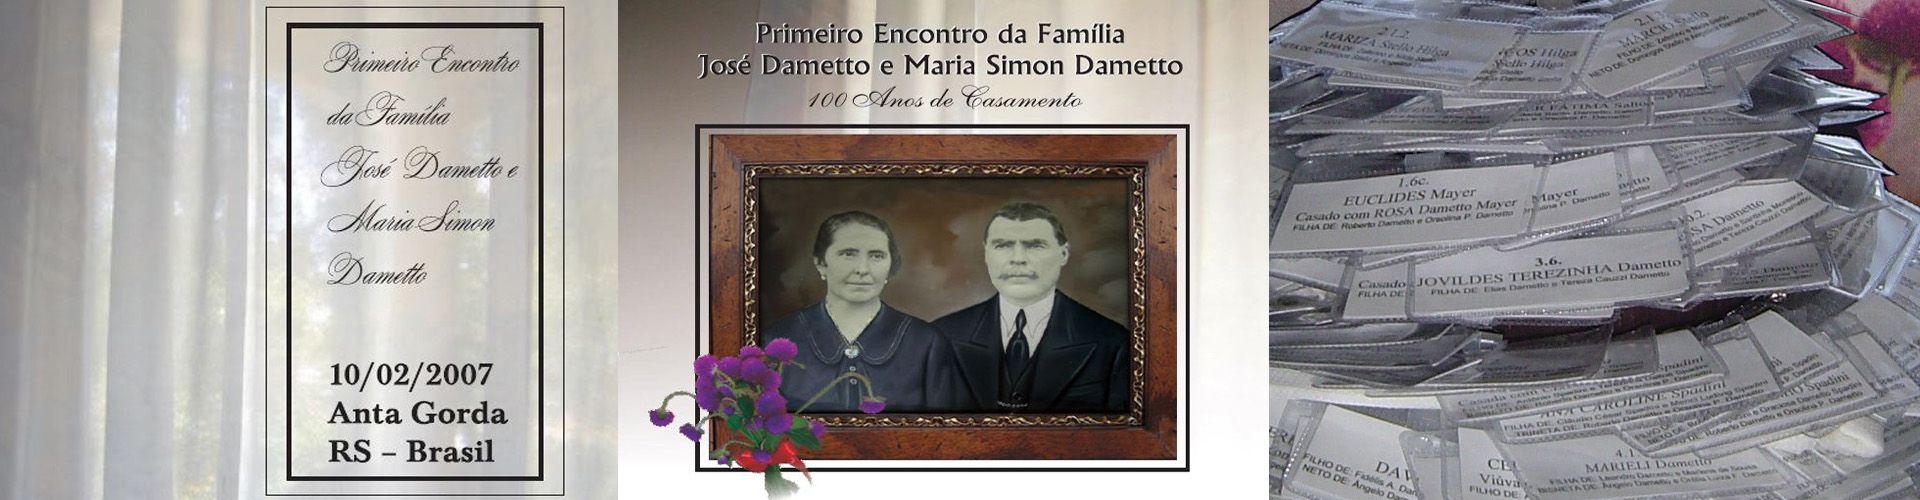 Convite e crachás do Primeiro Encontro da Família Dametto.